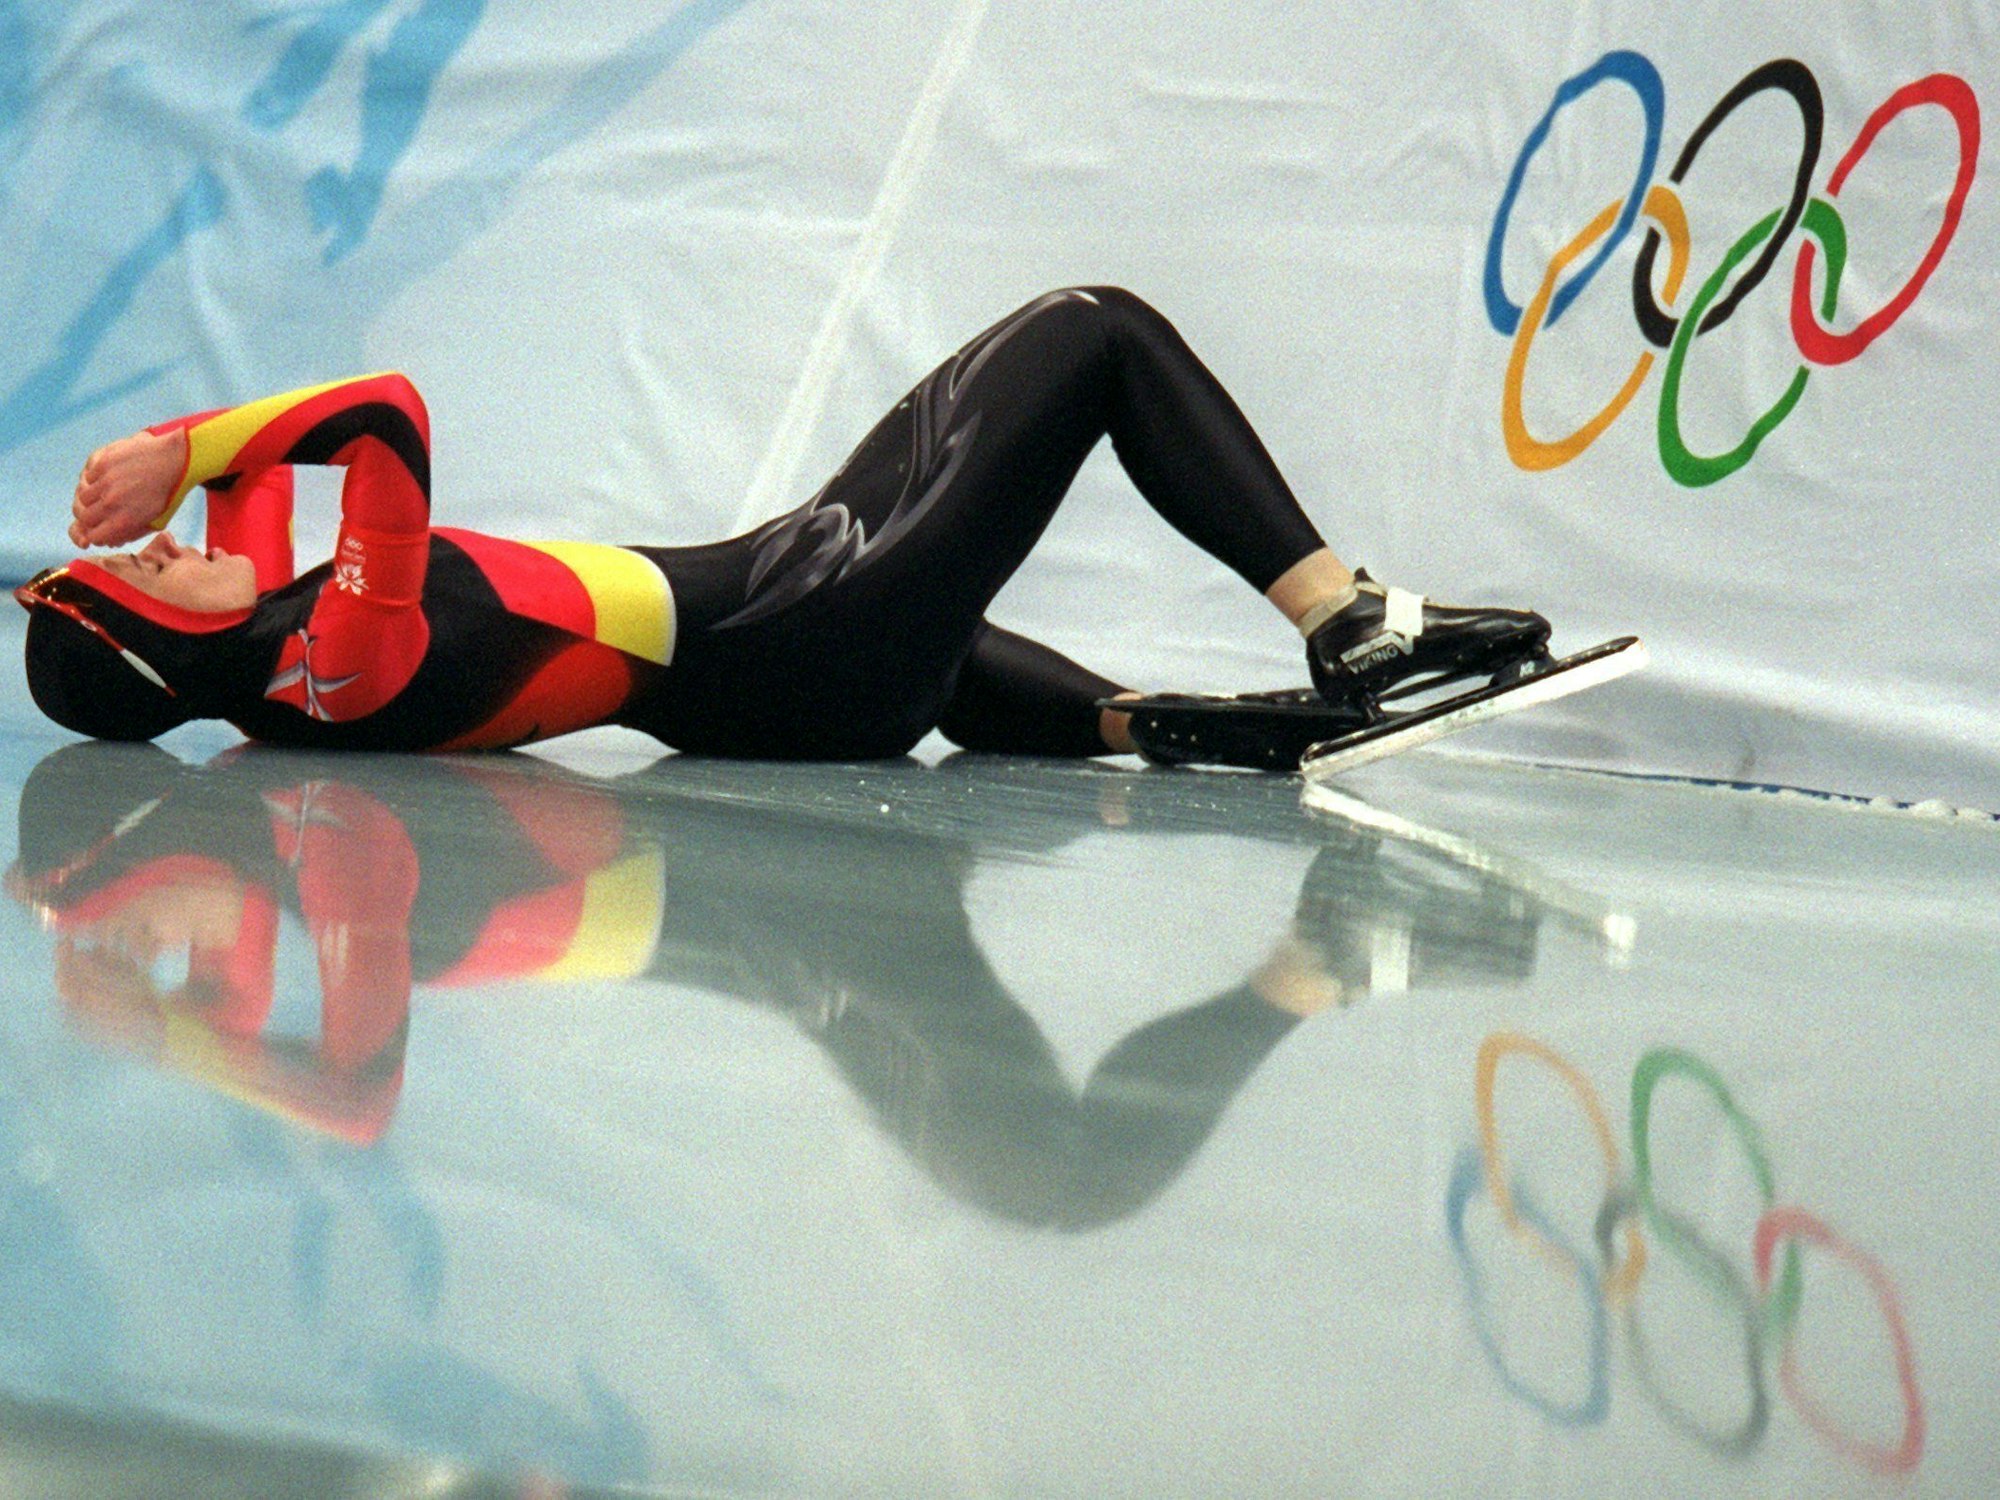 Eine Eisschnellläuferin liegt nach einem Sturz bei den Olympischen Spielen enttäuscht auf der Eisbahn.